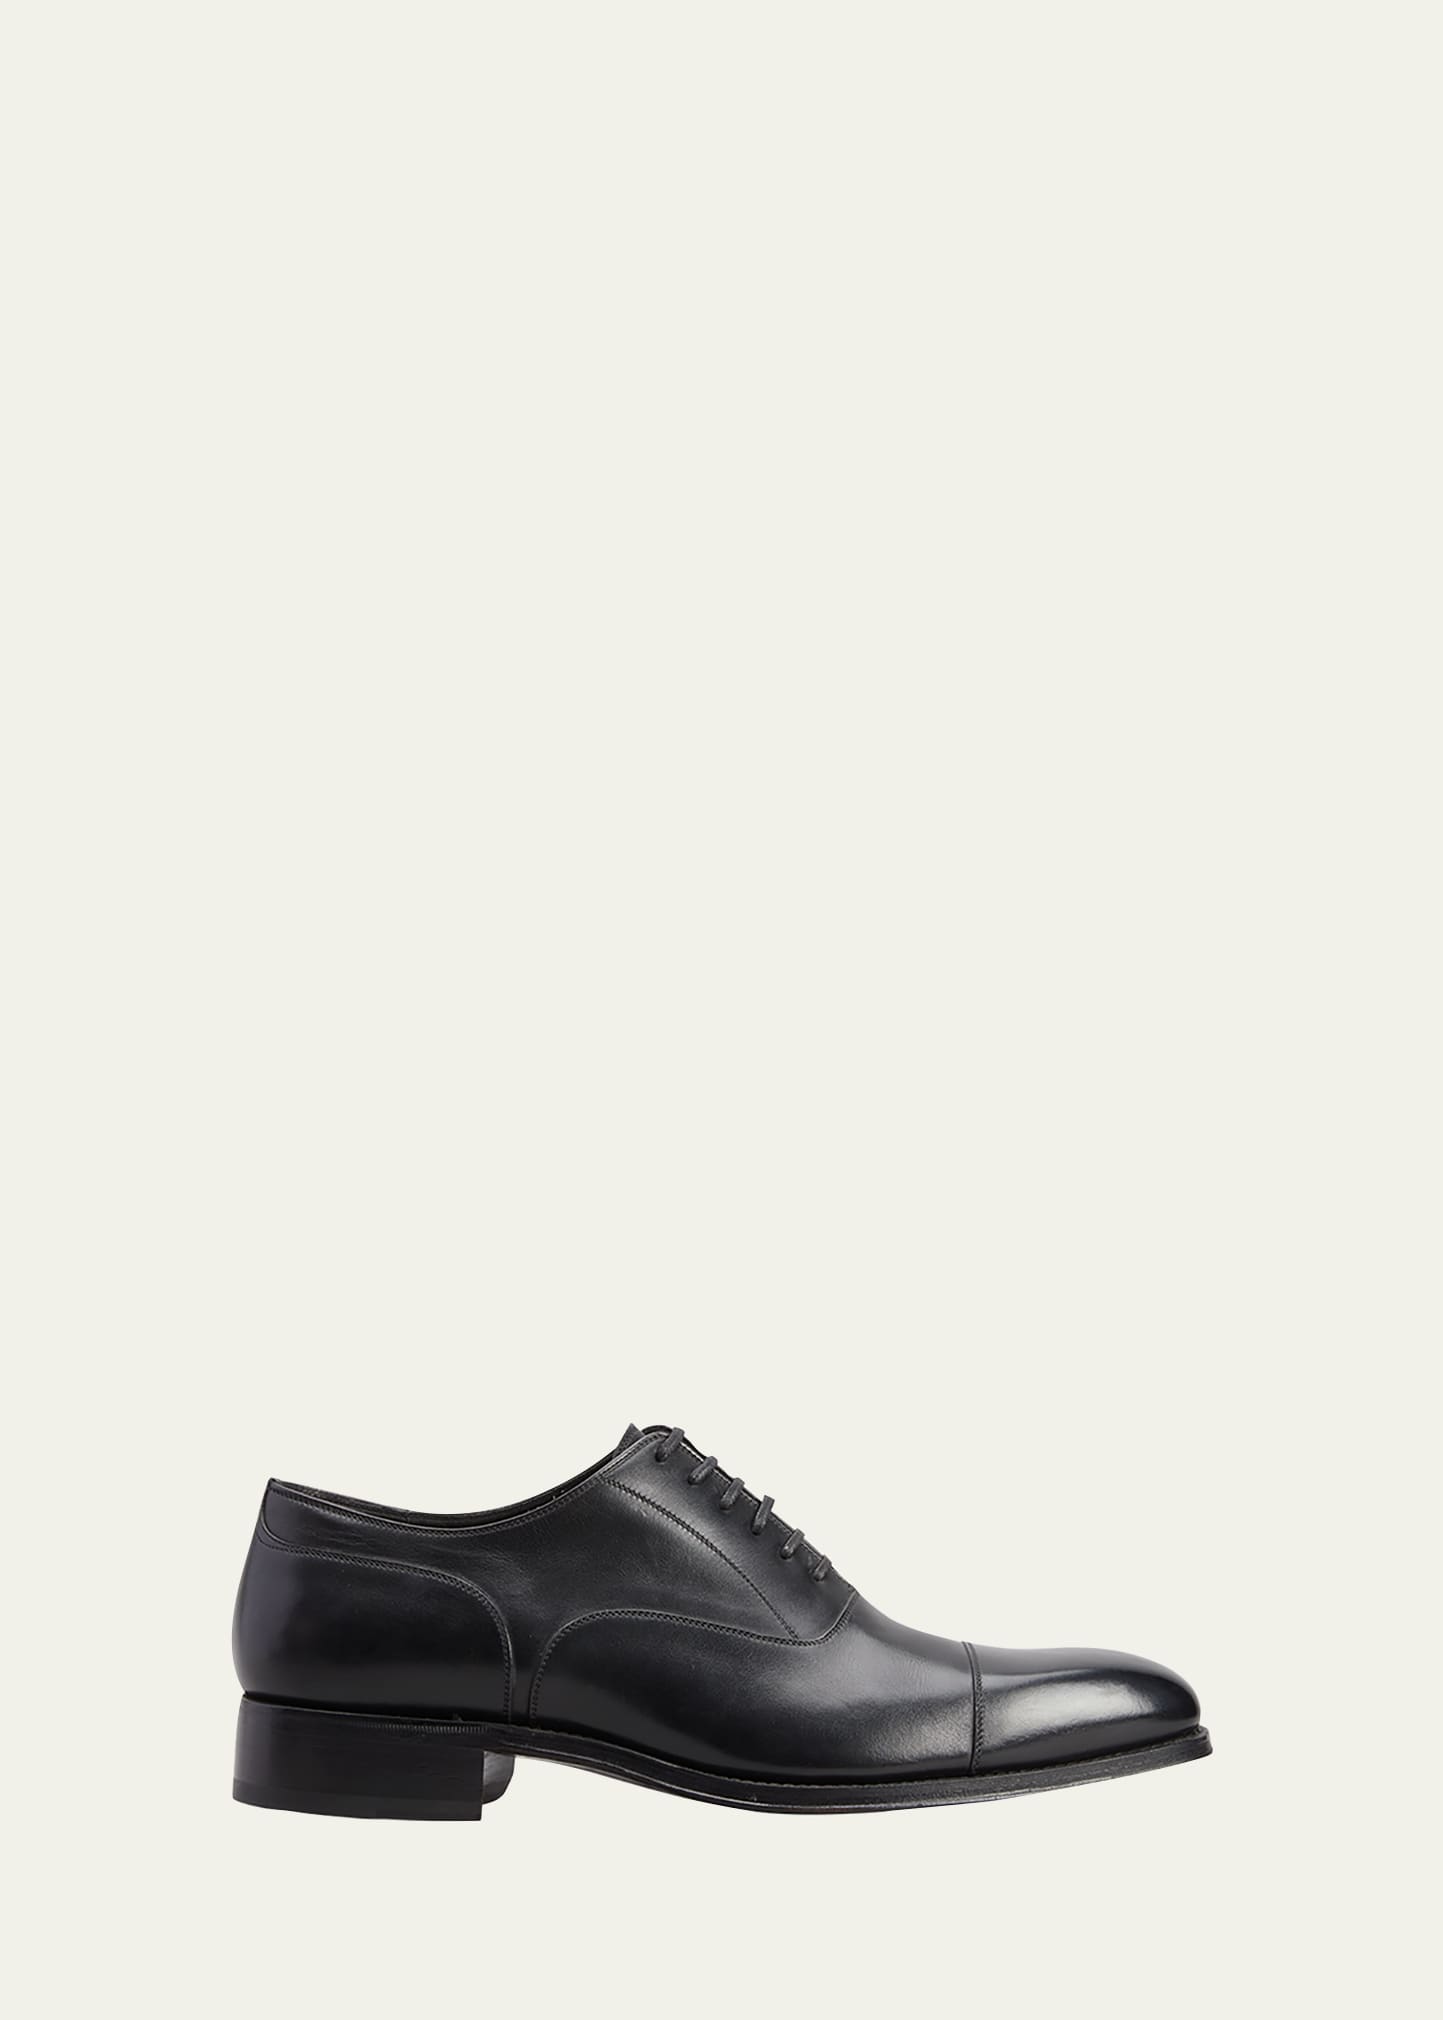 Tom Ford Men's Clayton Cap Toe Leather Oxfords In Black